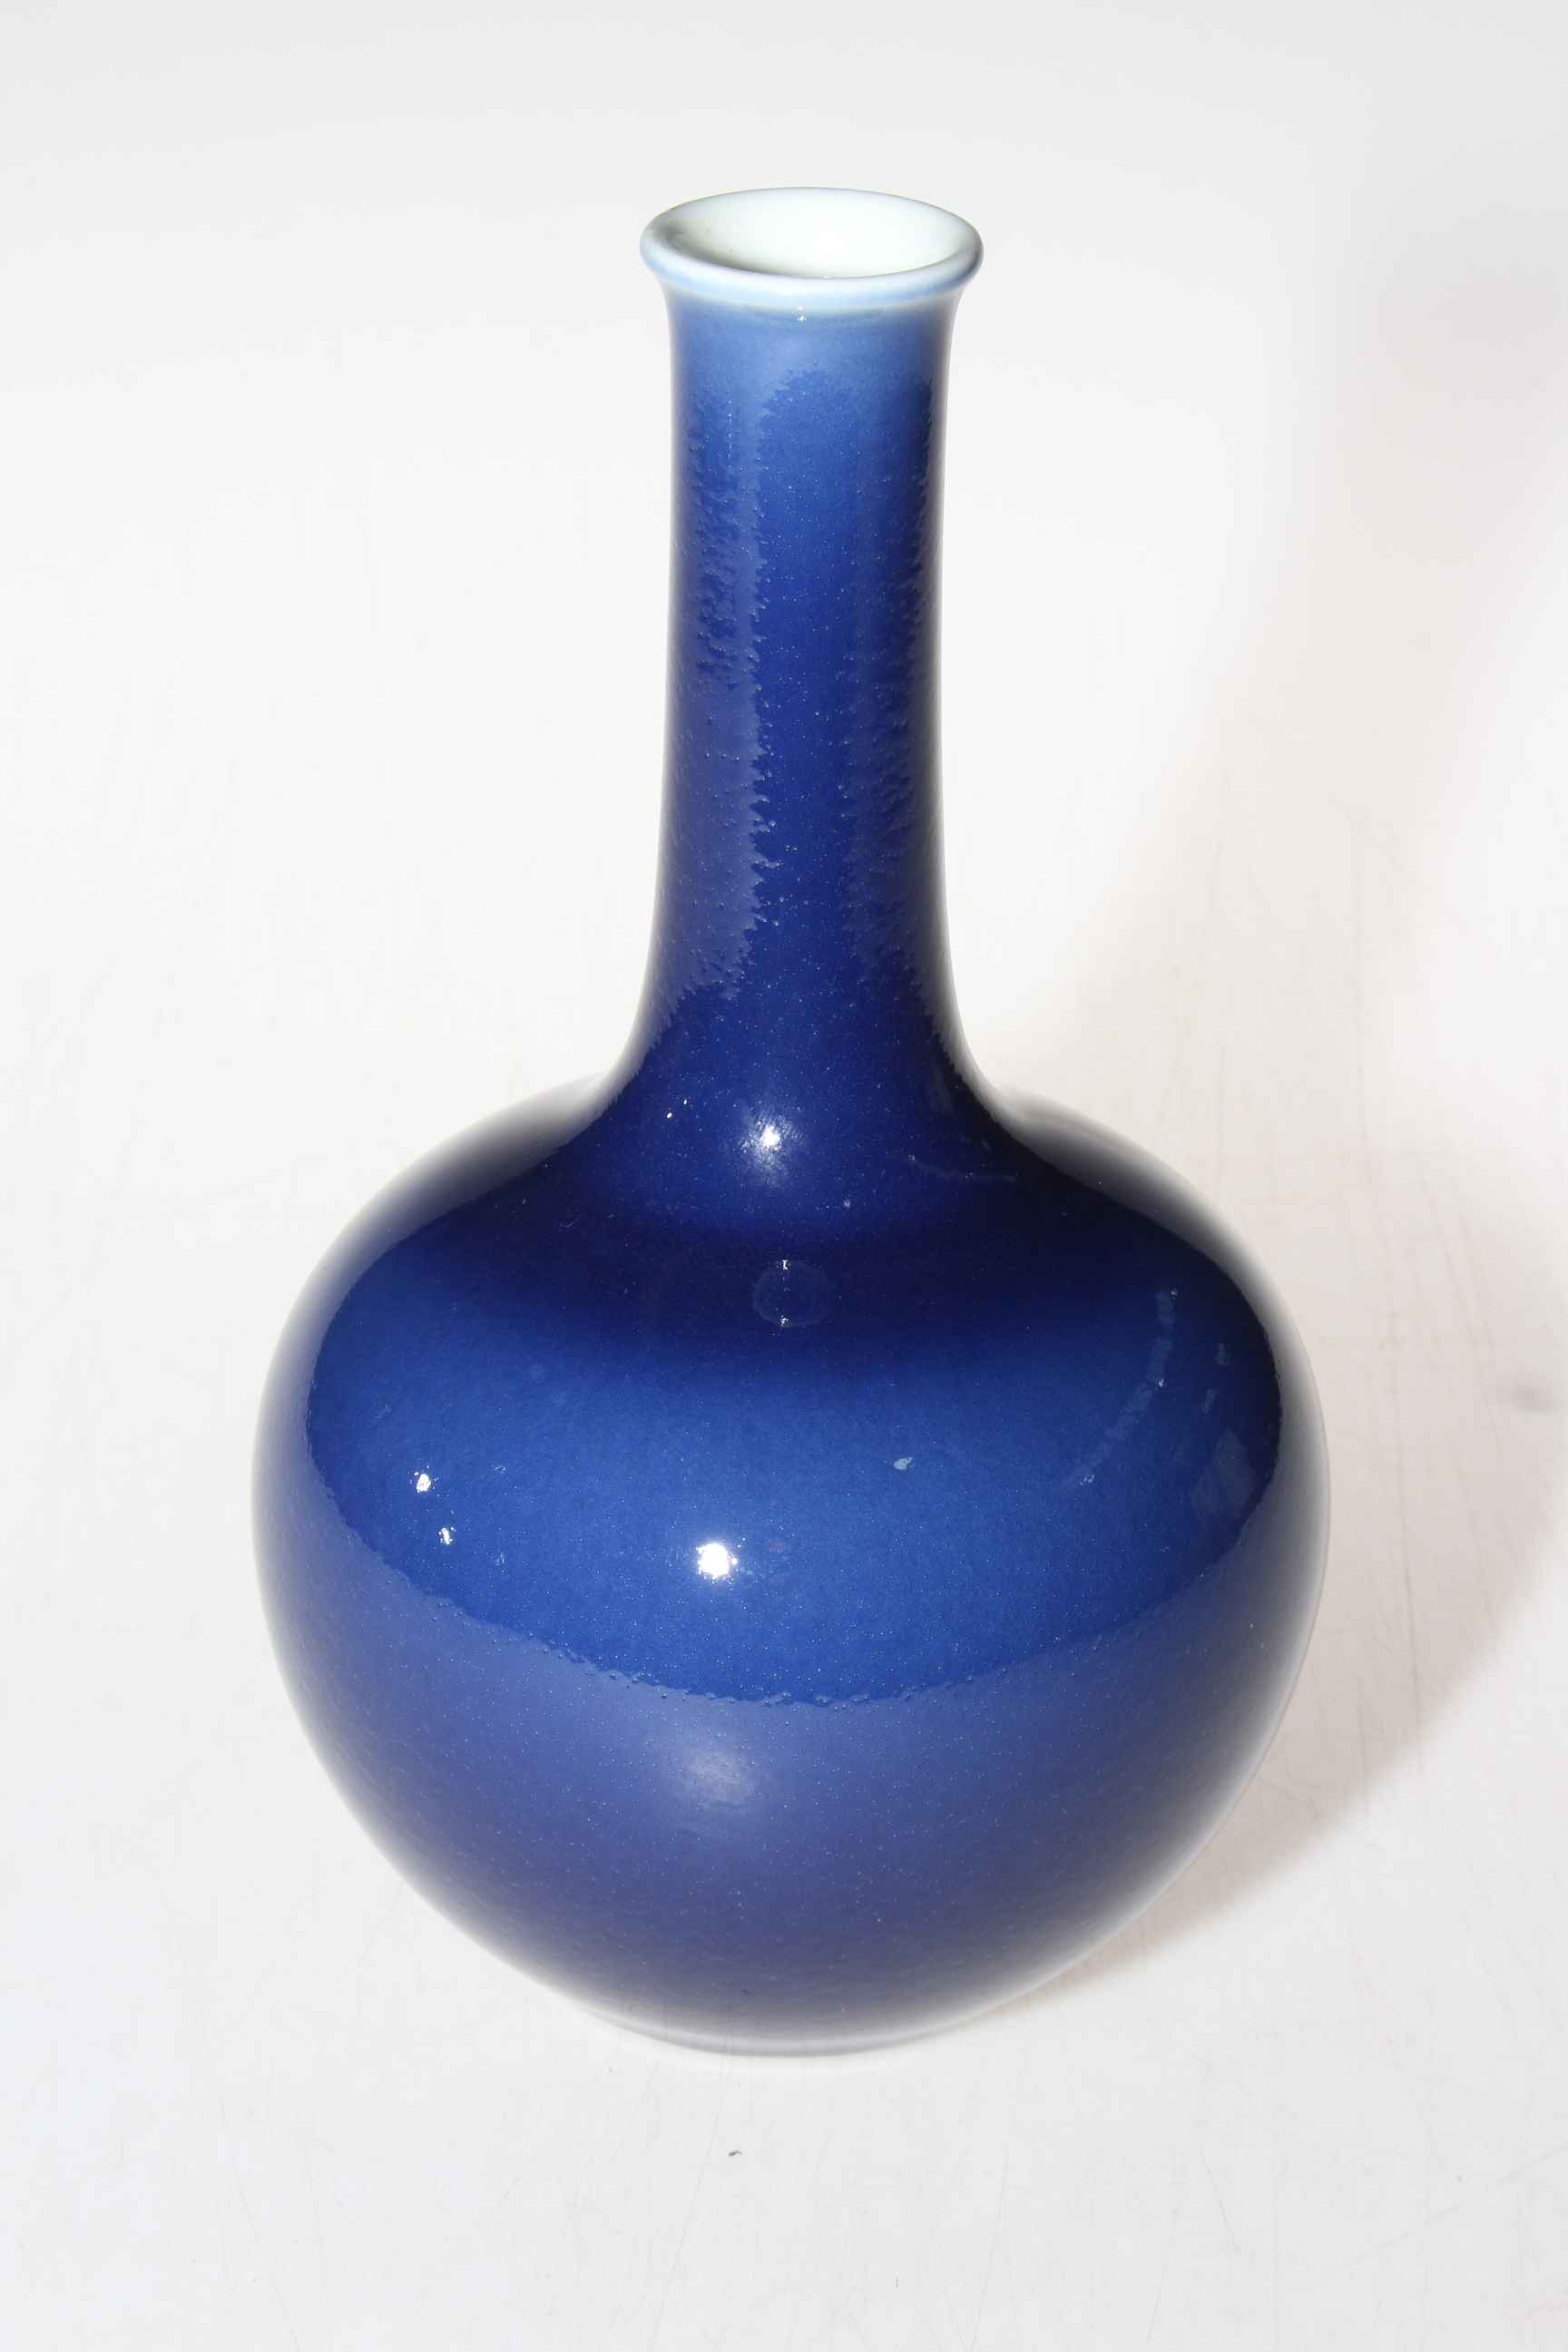 Chinese blue glazed bottle neck vase with Qianlong mark to base, 21cm high.